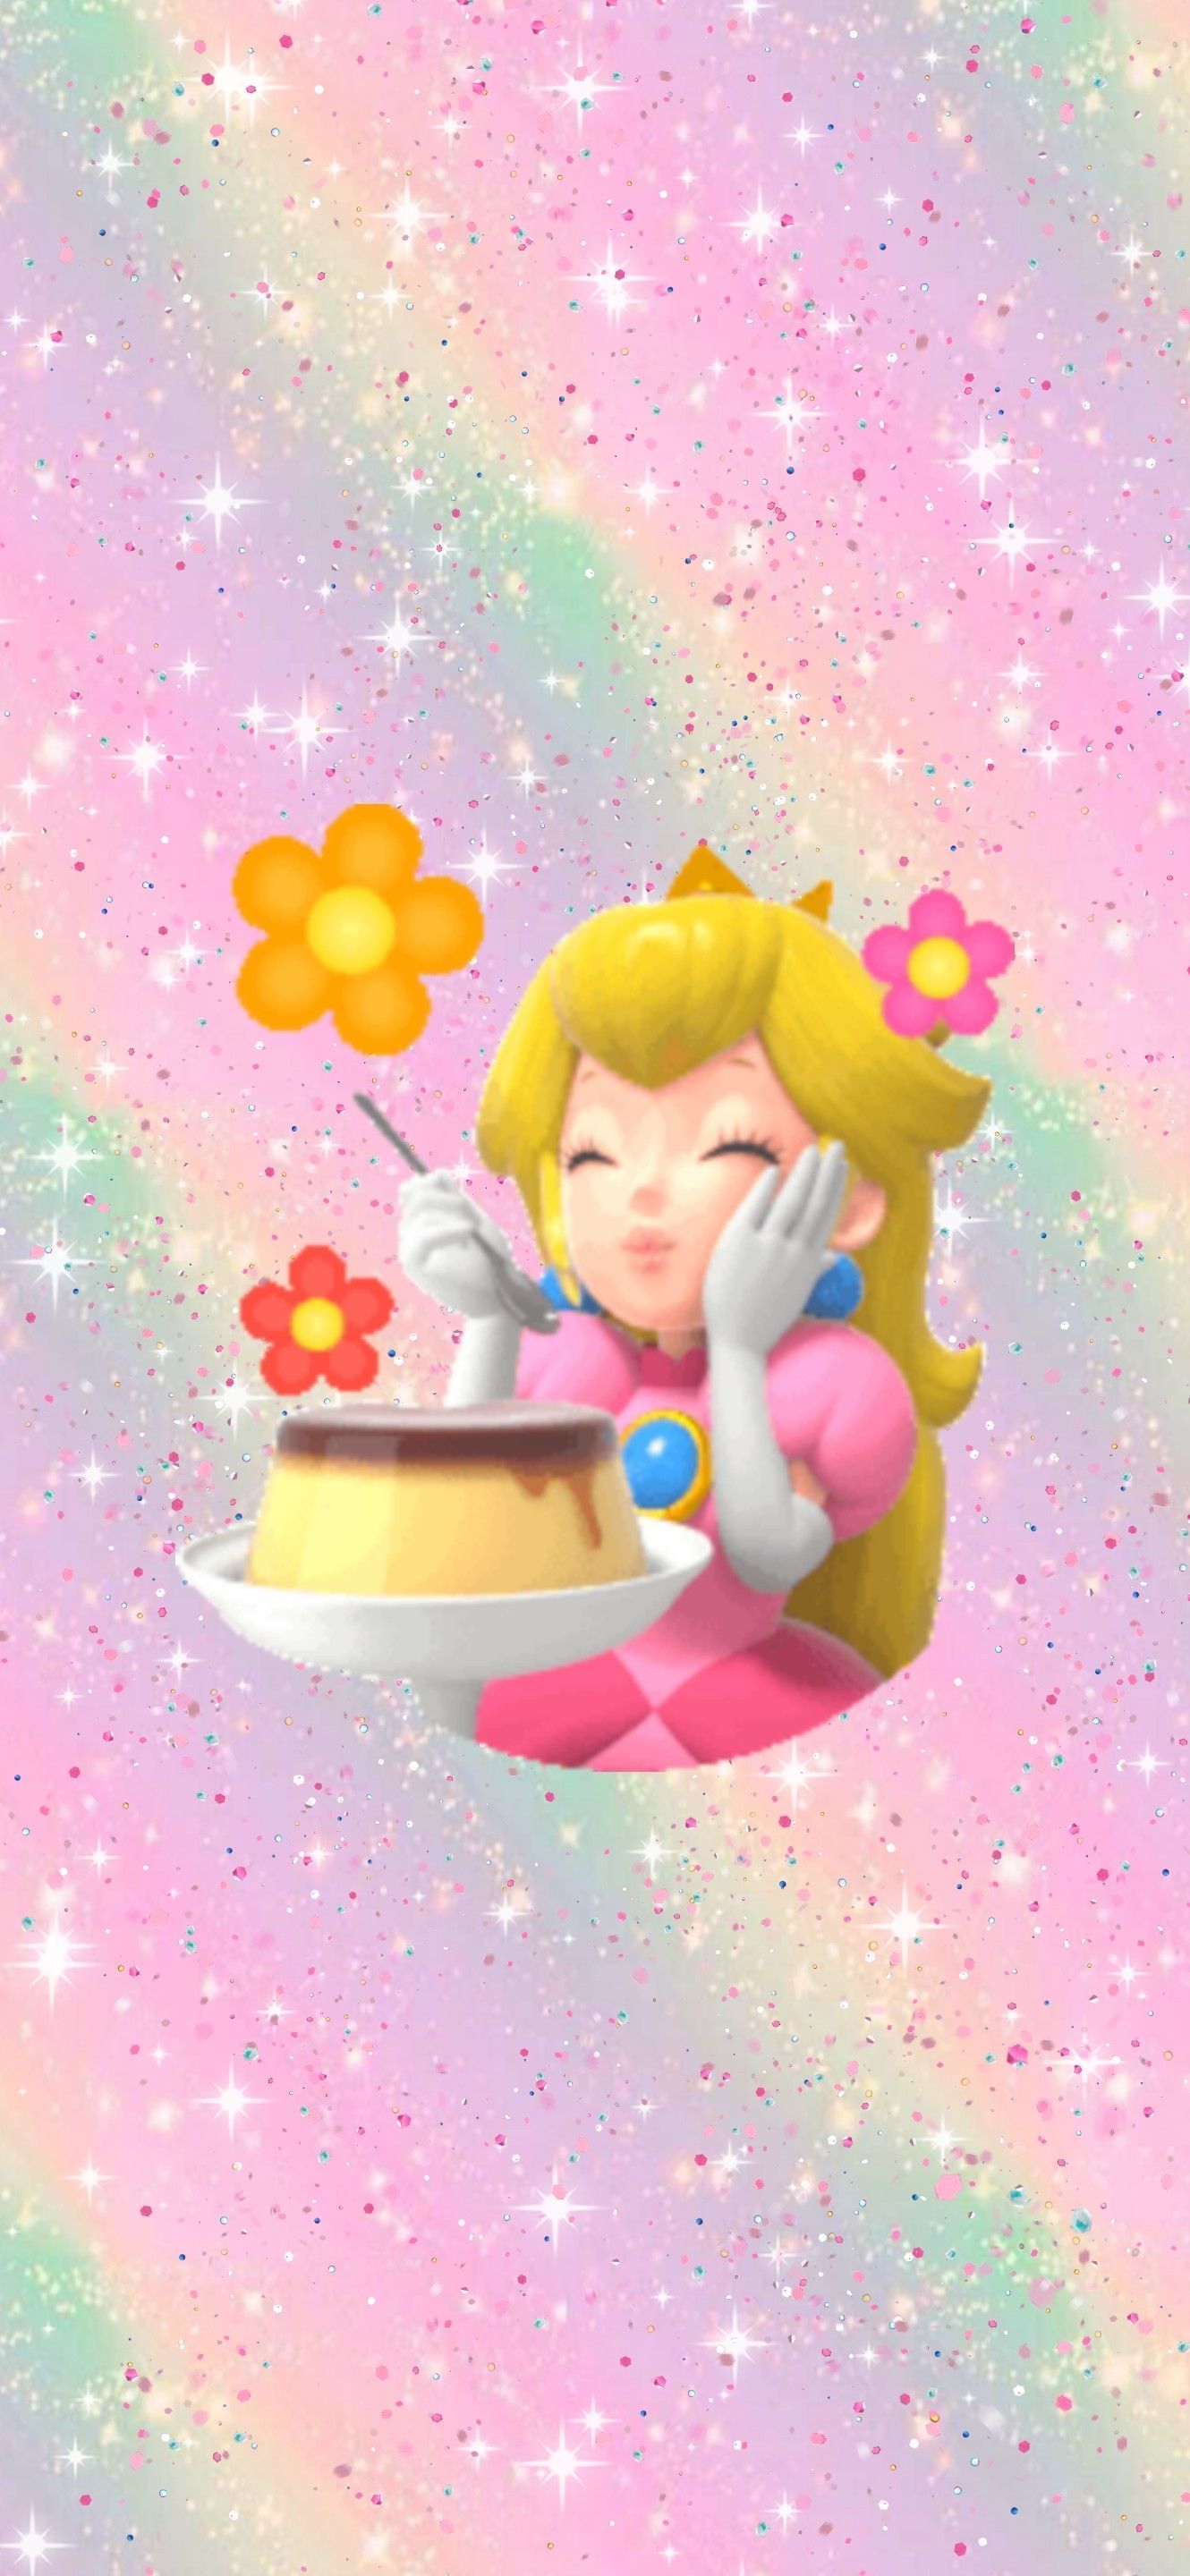 Nintendo Princess Peach aesthetic phone background wallpaper. Princess peach, Super princess peach, Nintendo princess